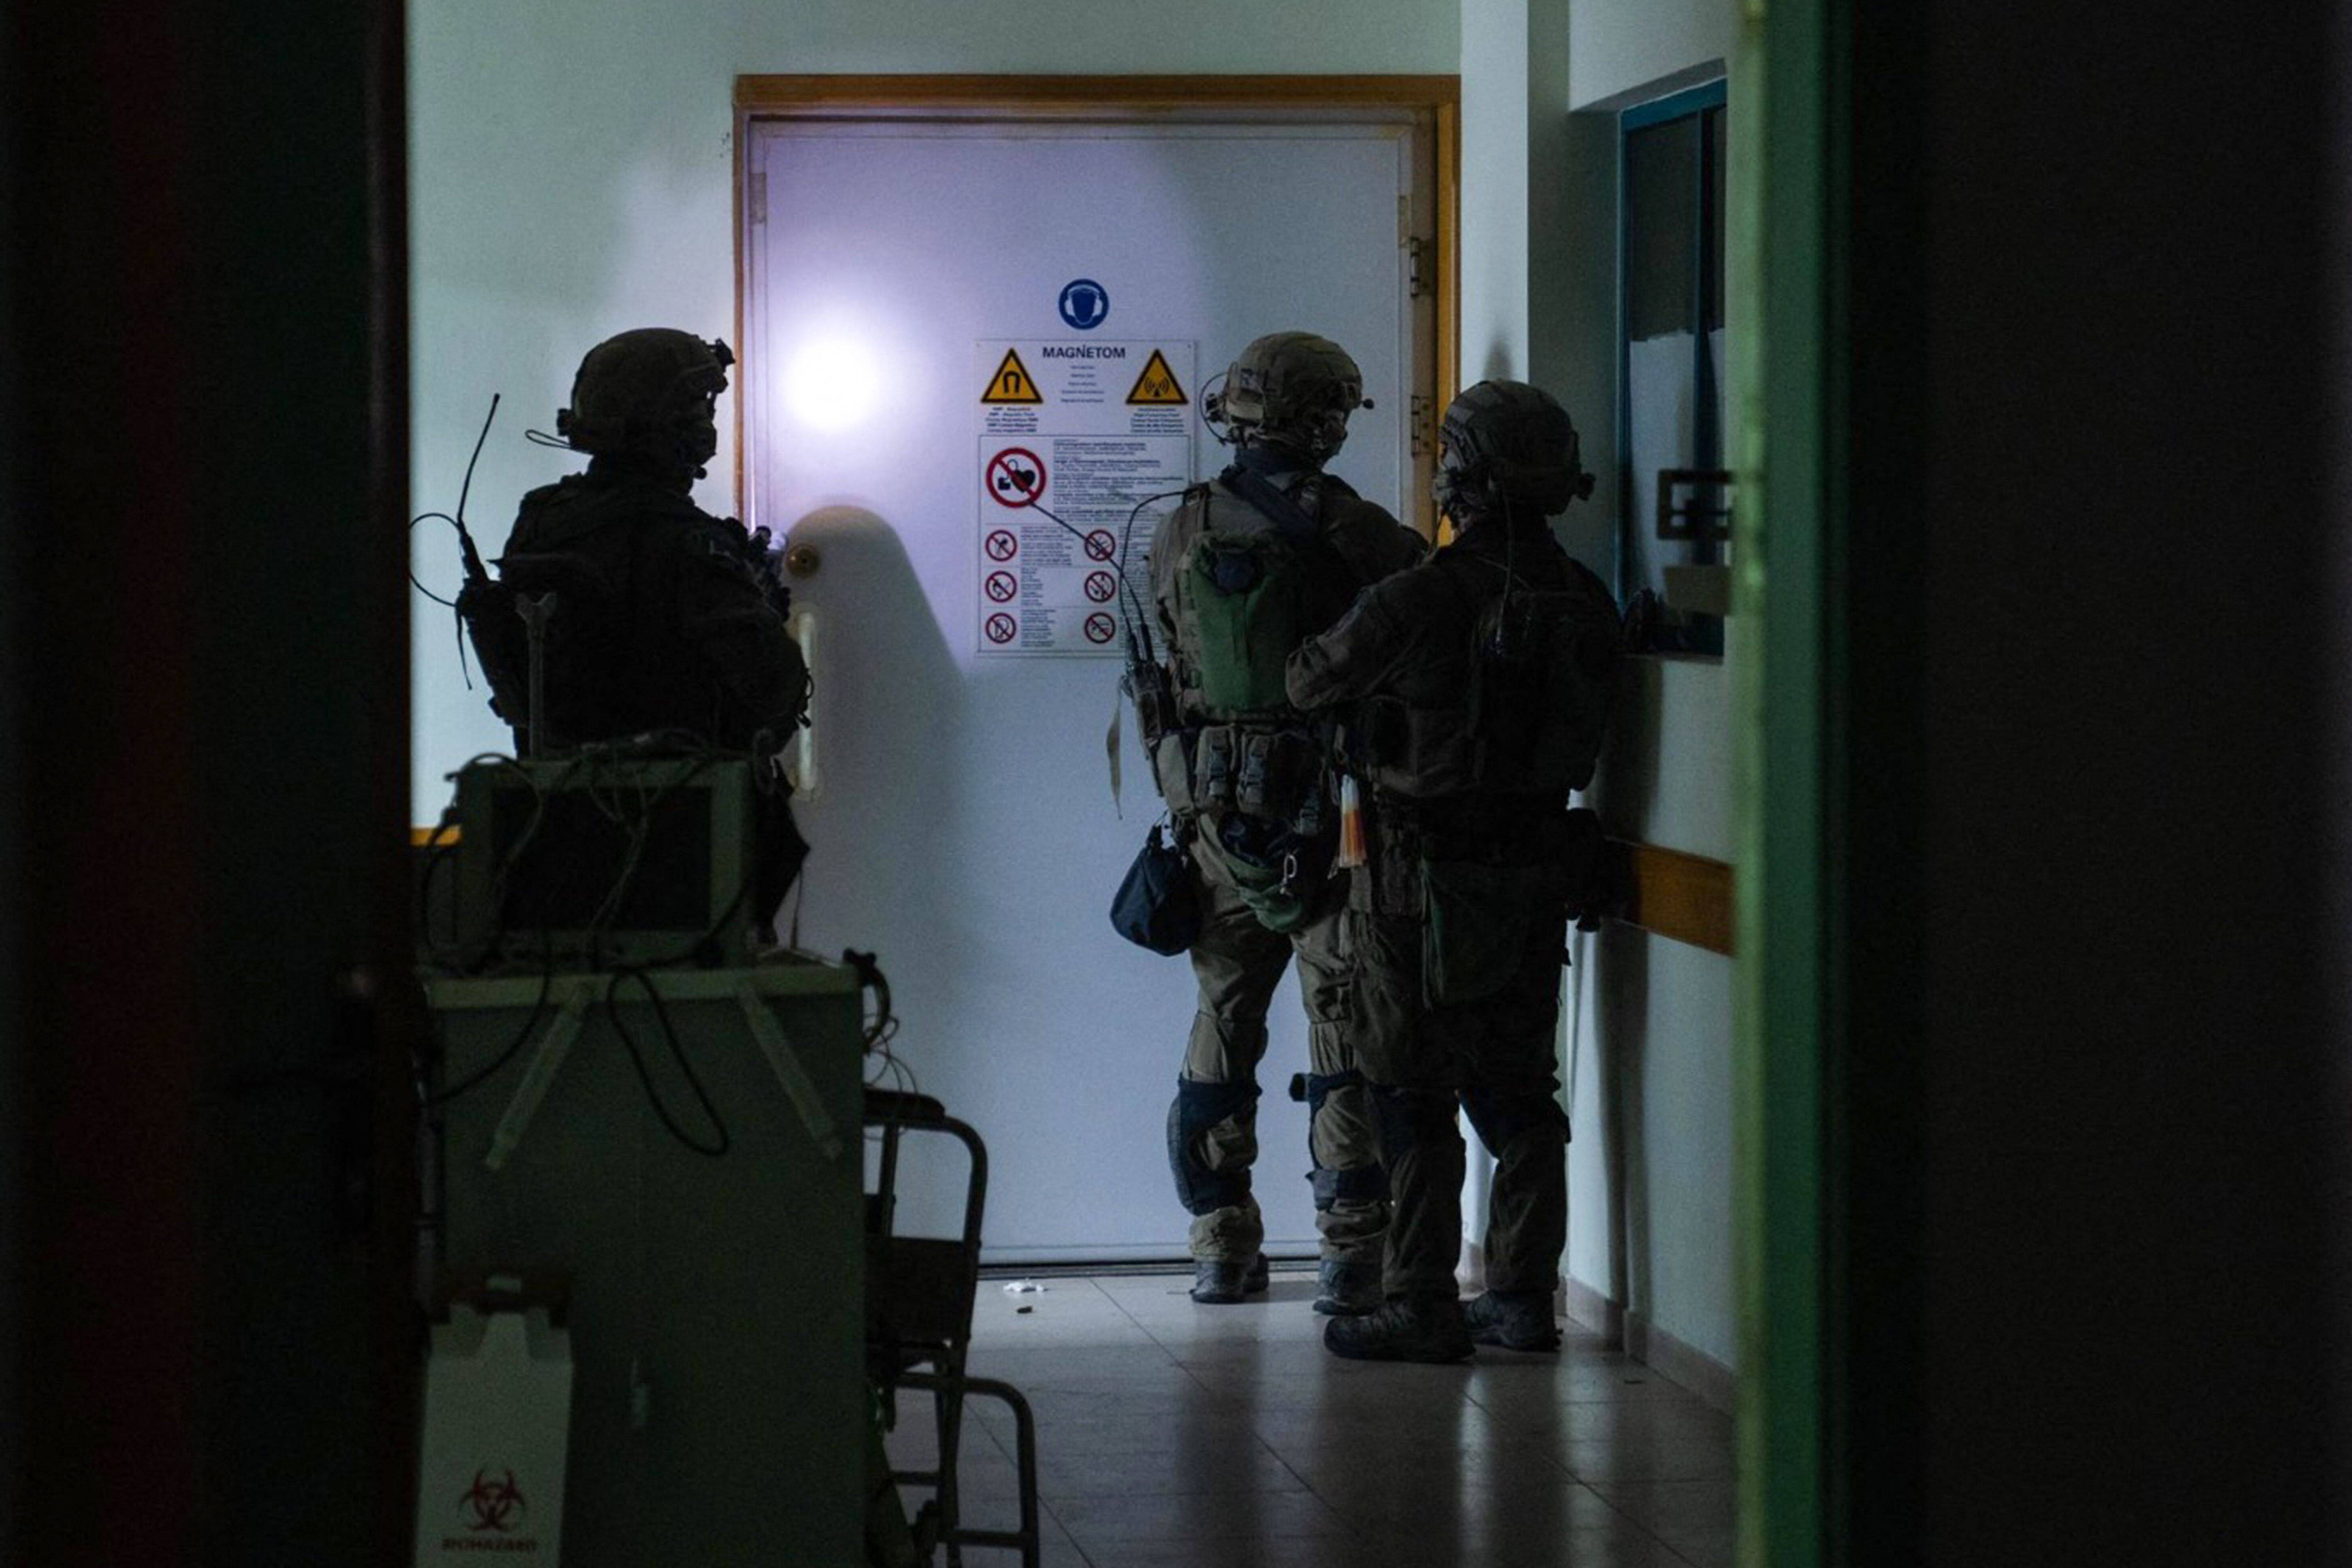 Cette photo publiée par l'armée israélienne montre des soldats israéliens menant une opération à l'intérieur de l'hôpital Al-Shifa, le 15 novembre. — © - / AFP